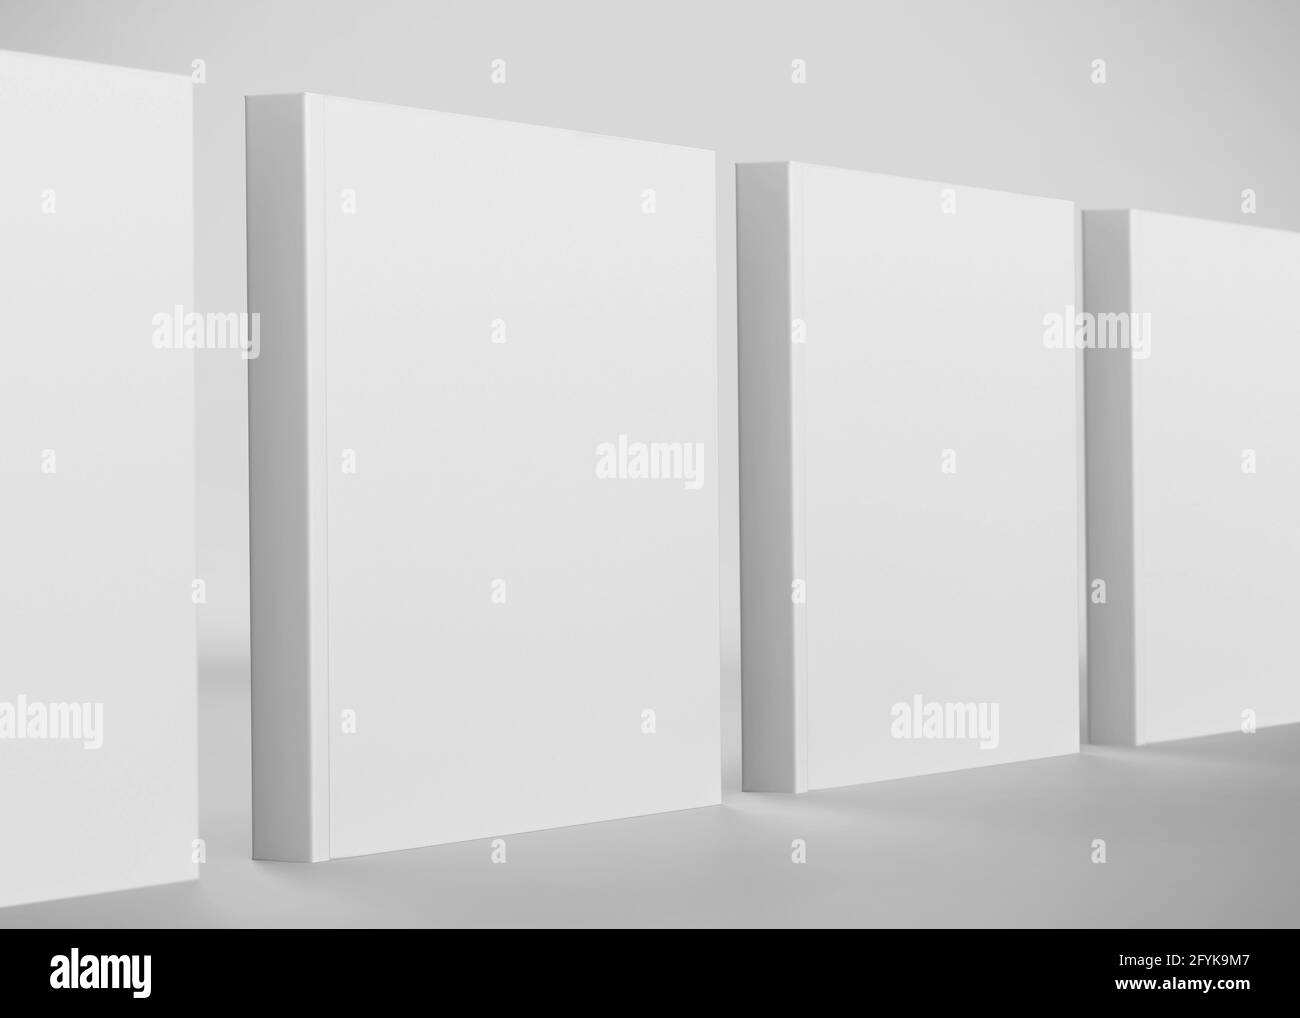 Weiße quadratische Box Mockup, Blank Schuhkarton Karton Container, 3d-Rendering isoliert auf hellem Hintergrund Stockfoto